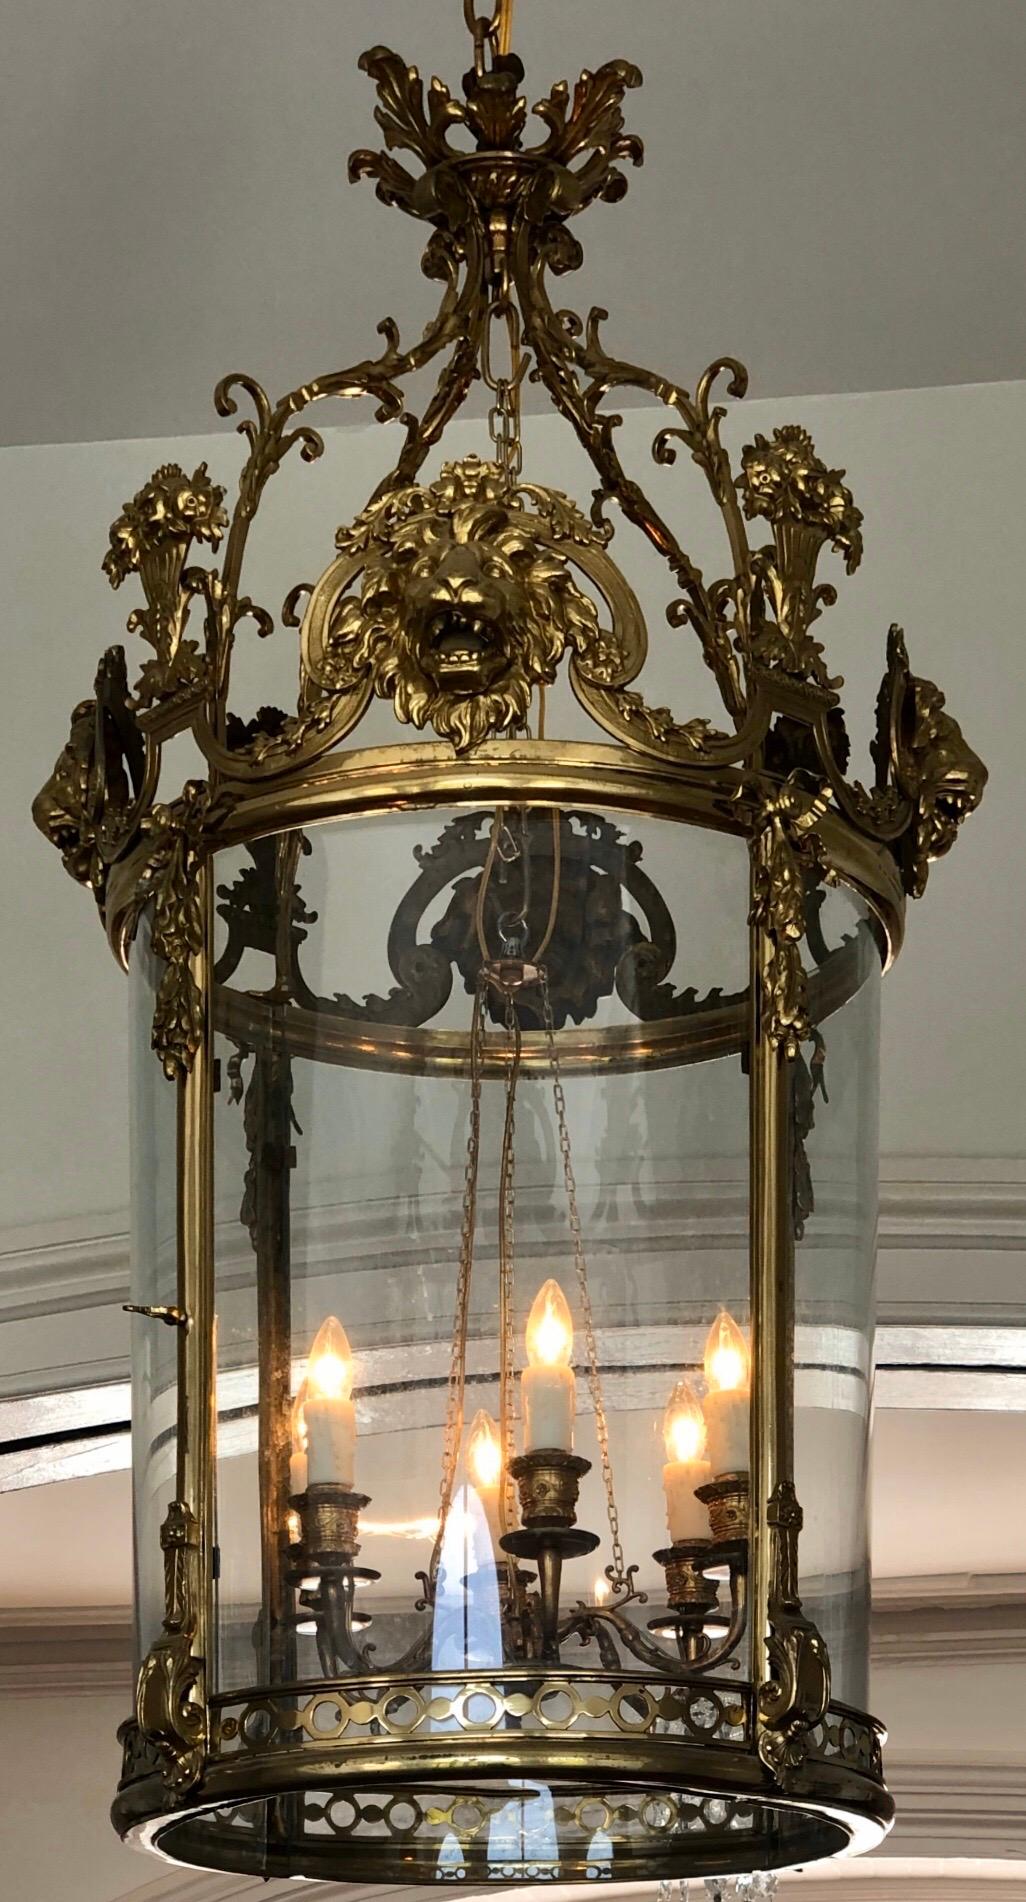 Monumentale englische Regency-Messinglaterne mit Löwenmaske wird von einem Interior Cluster mit sechs Kandelaberarmen beleuchtet, die ursprünglich Kerzen waren. Diese klassische Regency-Laterne hat vier gewölbte Glasvierecke (eines davon mit